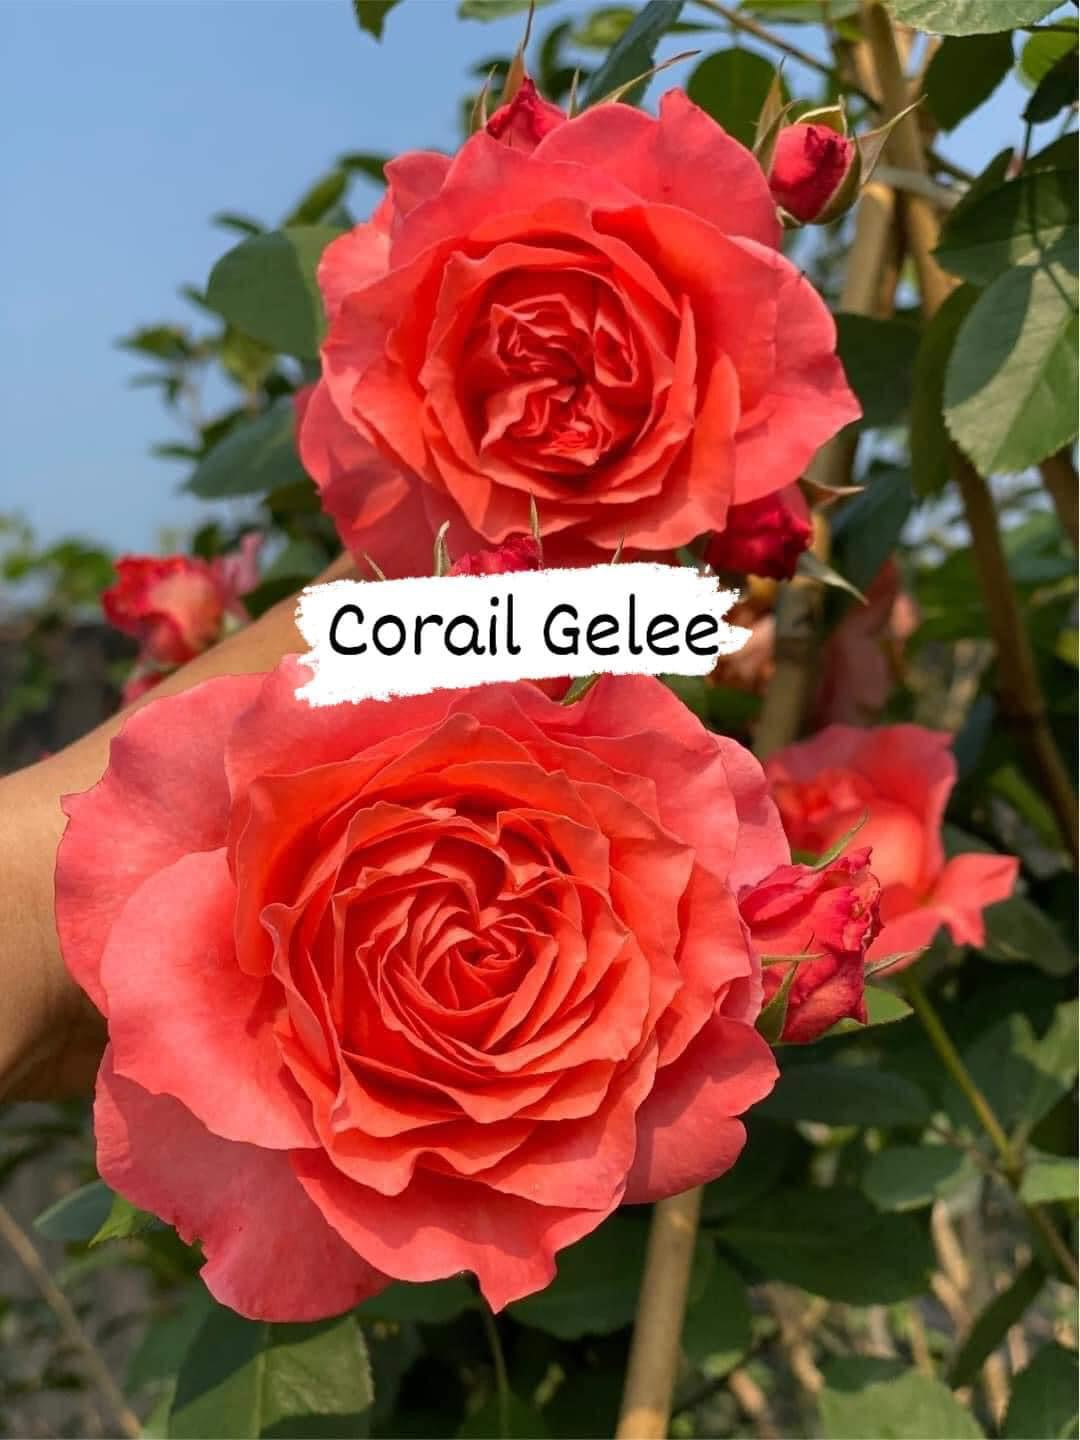 Corail Gelee